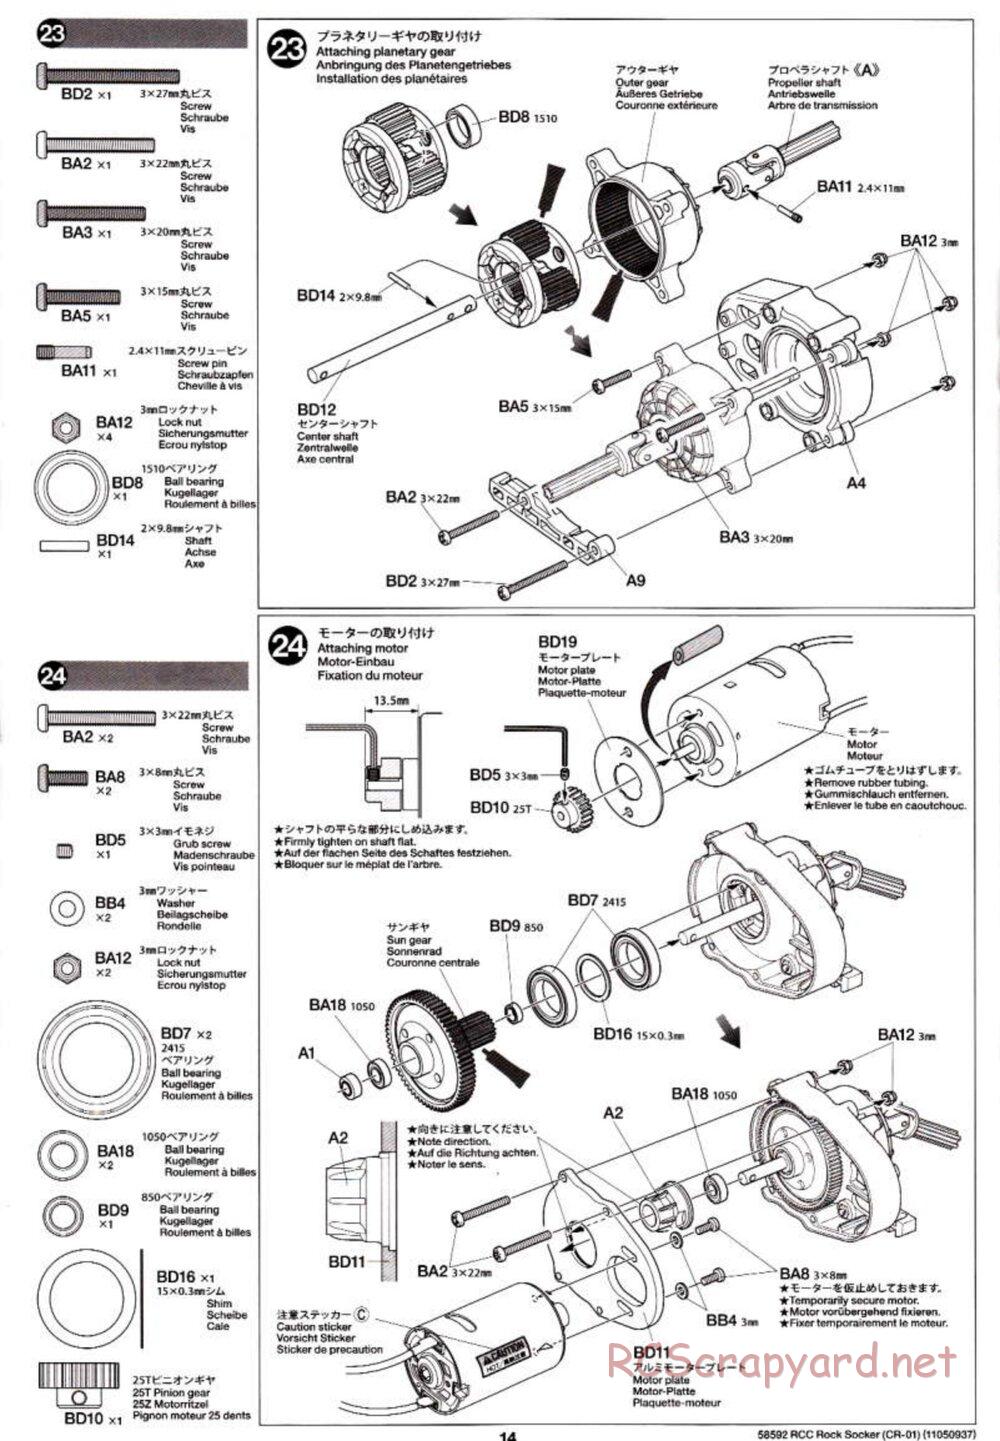 Tamiya - Rock Socker - CR-01 Chassis - Manual - Page 14